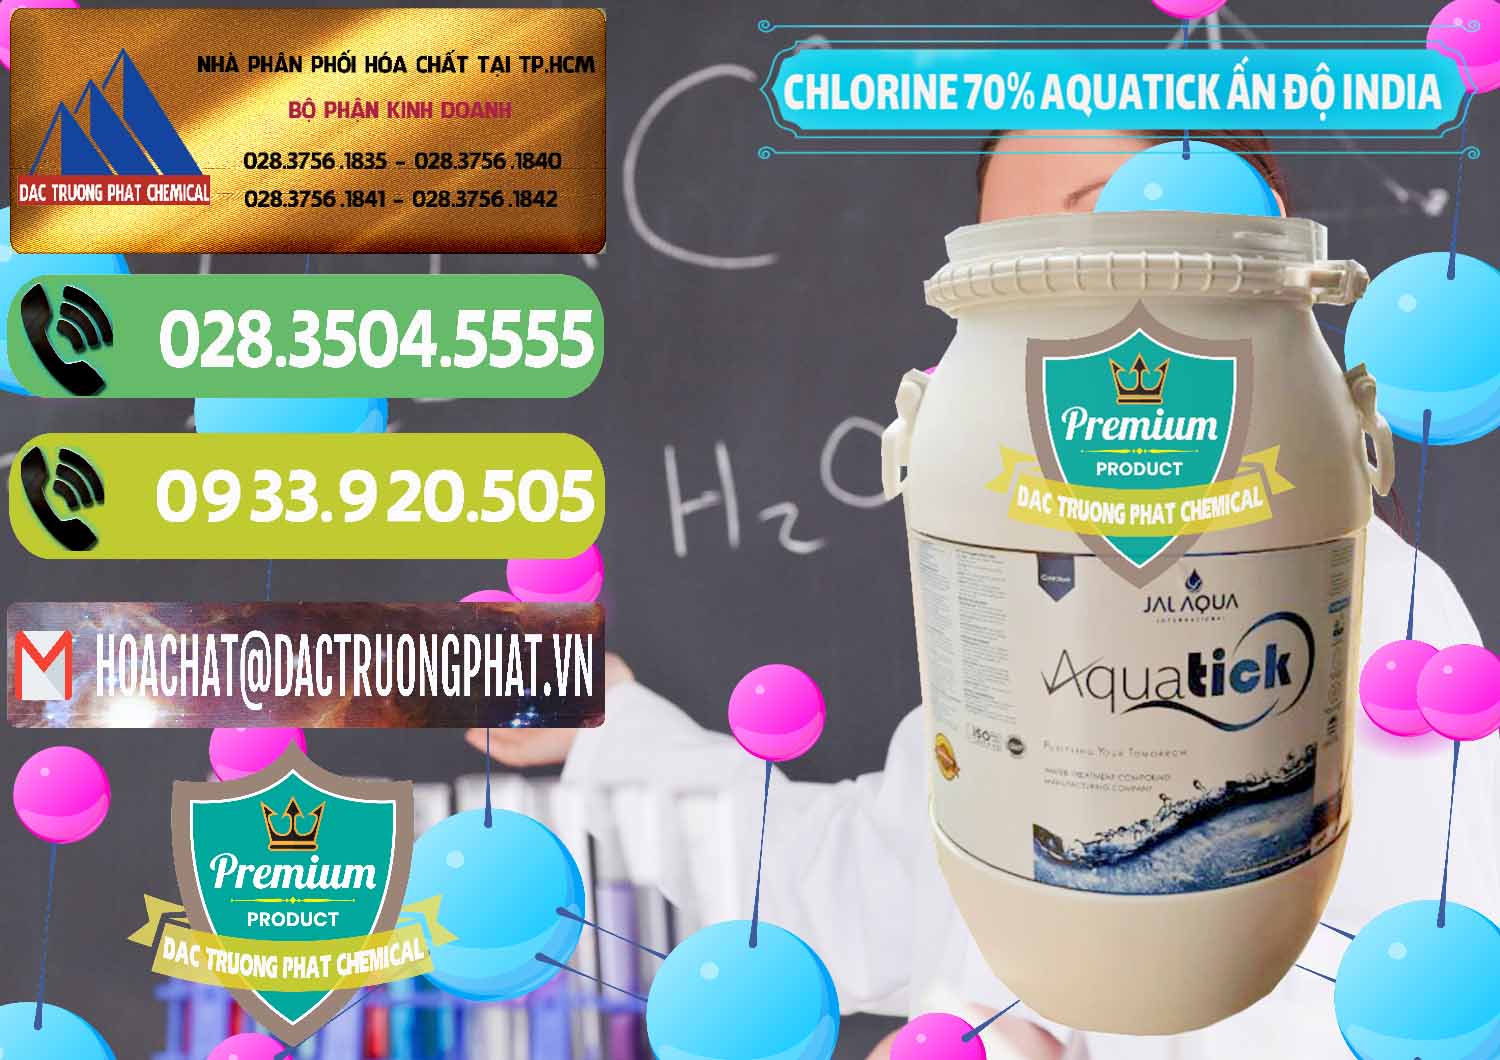 Đơn vị chuyên bán - cung ứng Chlorine – Clorin 70% Aquatick Jal Aqua Ấn Độ India - 0215 - Chuyên cung cấp ( kinh doanh ) hóa chất tại TP.HCM - hoachatmientay.vn